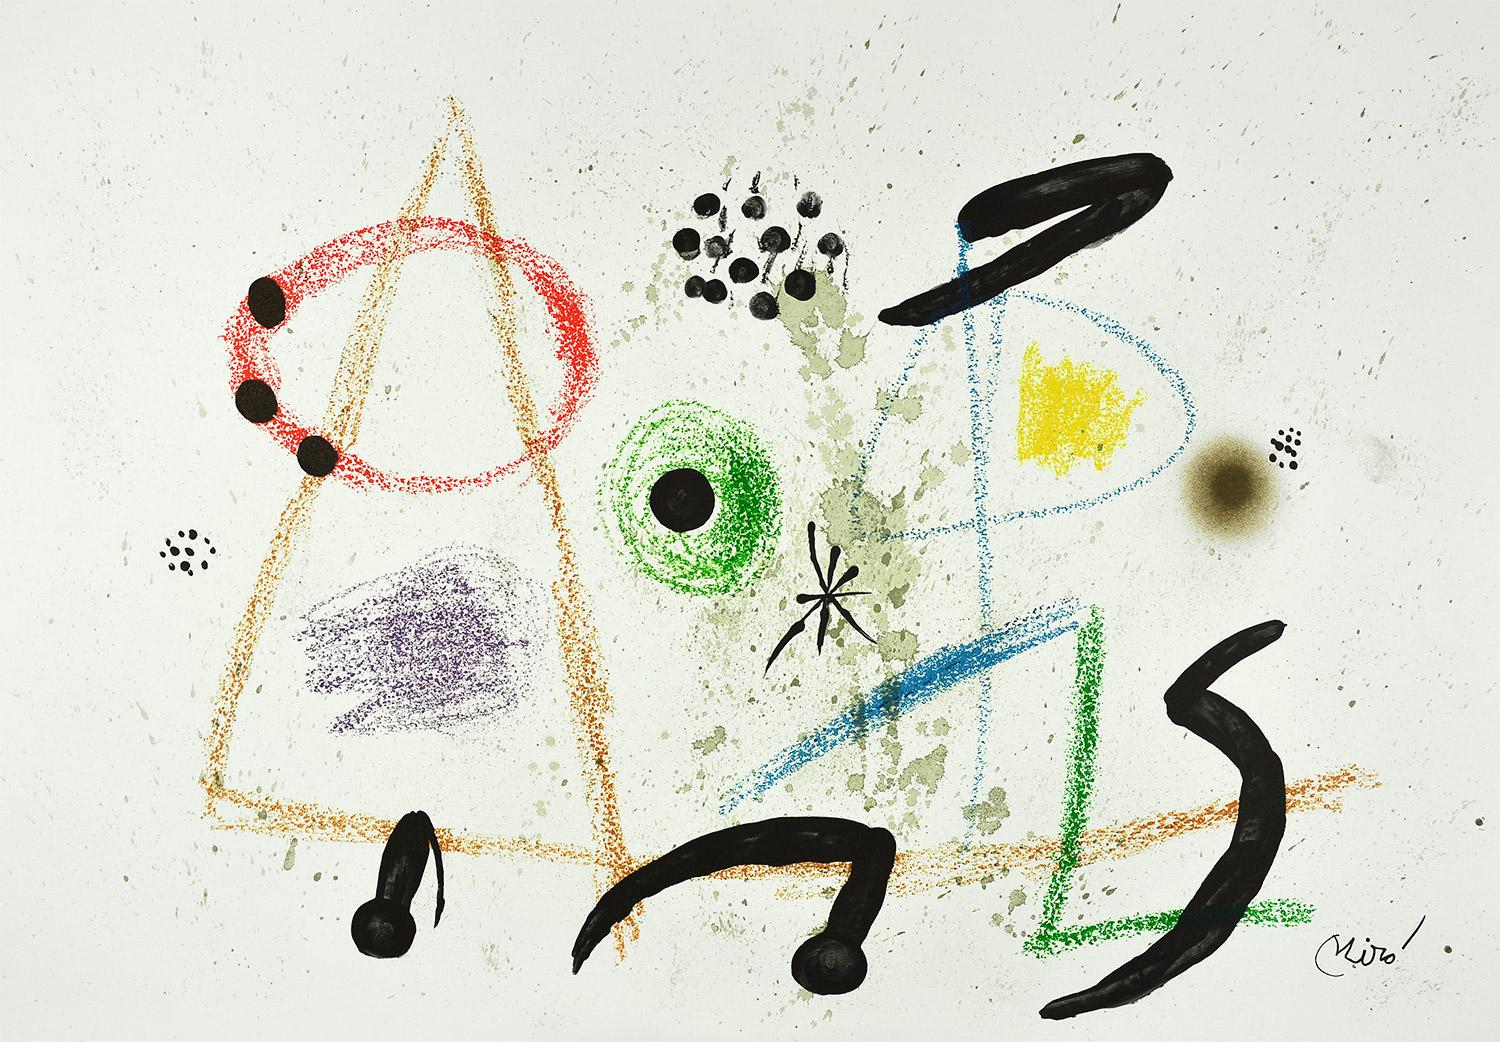 Joan Miró - Maravillas con variaciones acrósticas en el jardín de Miró III
Datum der Gründung: 1975
Medium: Lithographie
Medien: Gvarro-Papier
Auflage: 1500
Größe: 49,5 x 35,5 cm
Zustand: In sehr gutem Zustand und nie gerahmt
Beobachtungen: